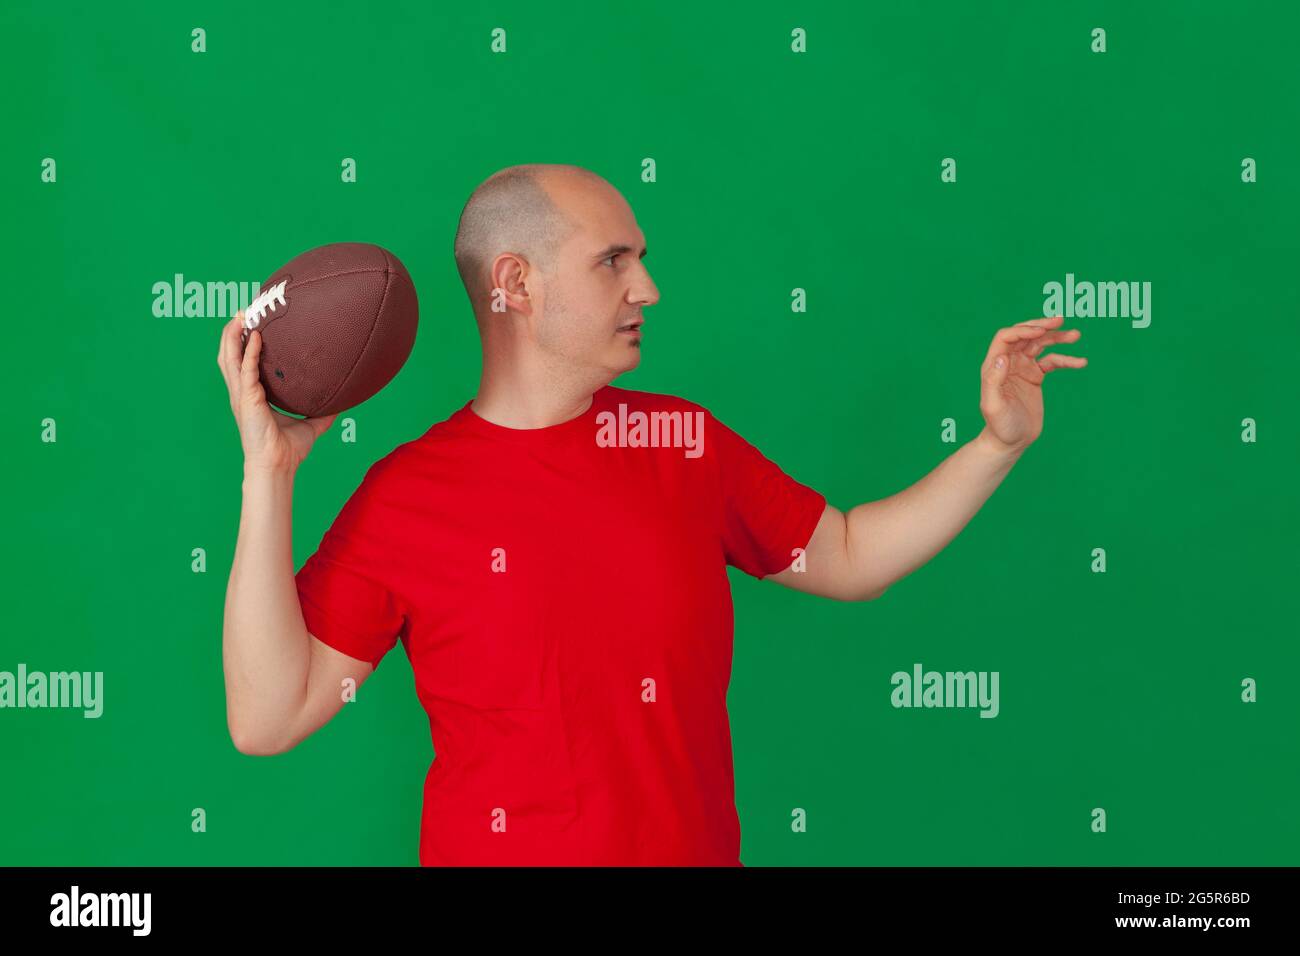 Ein kahlköpfiger Kaukasusmann, der in einem roten T-Shirt gekleidet ist und einen amerikanischen Fußballball hält, der so positioniert ist, als würde er einen Vorwärtspass werfen. Der Hintergrund ist grün. Stockfoto